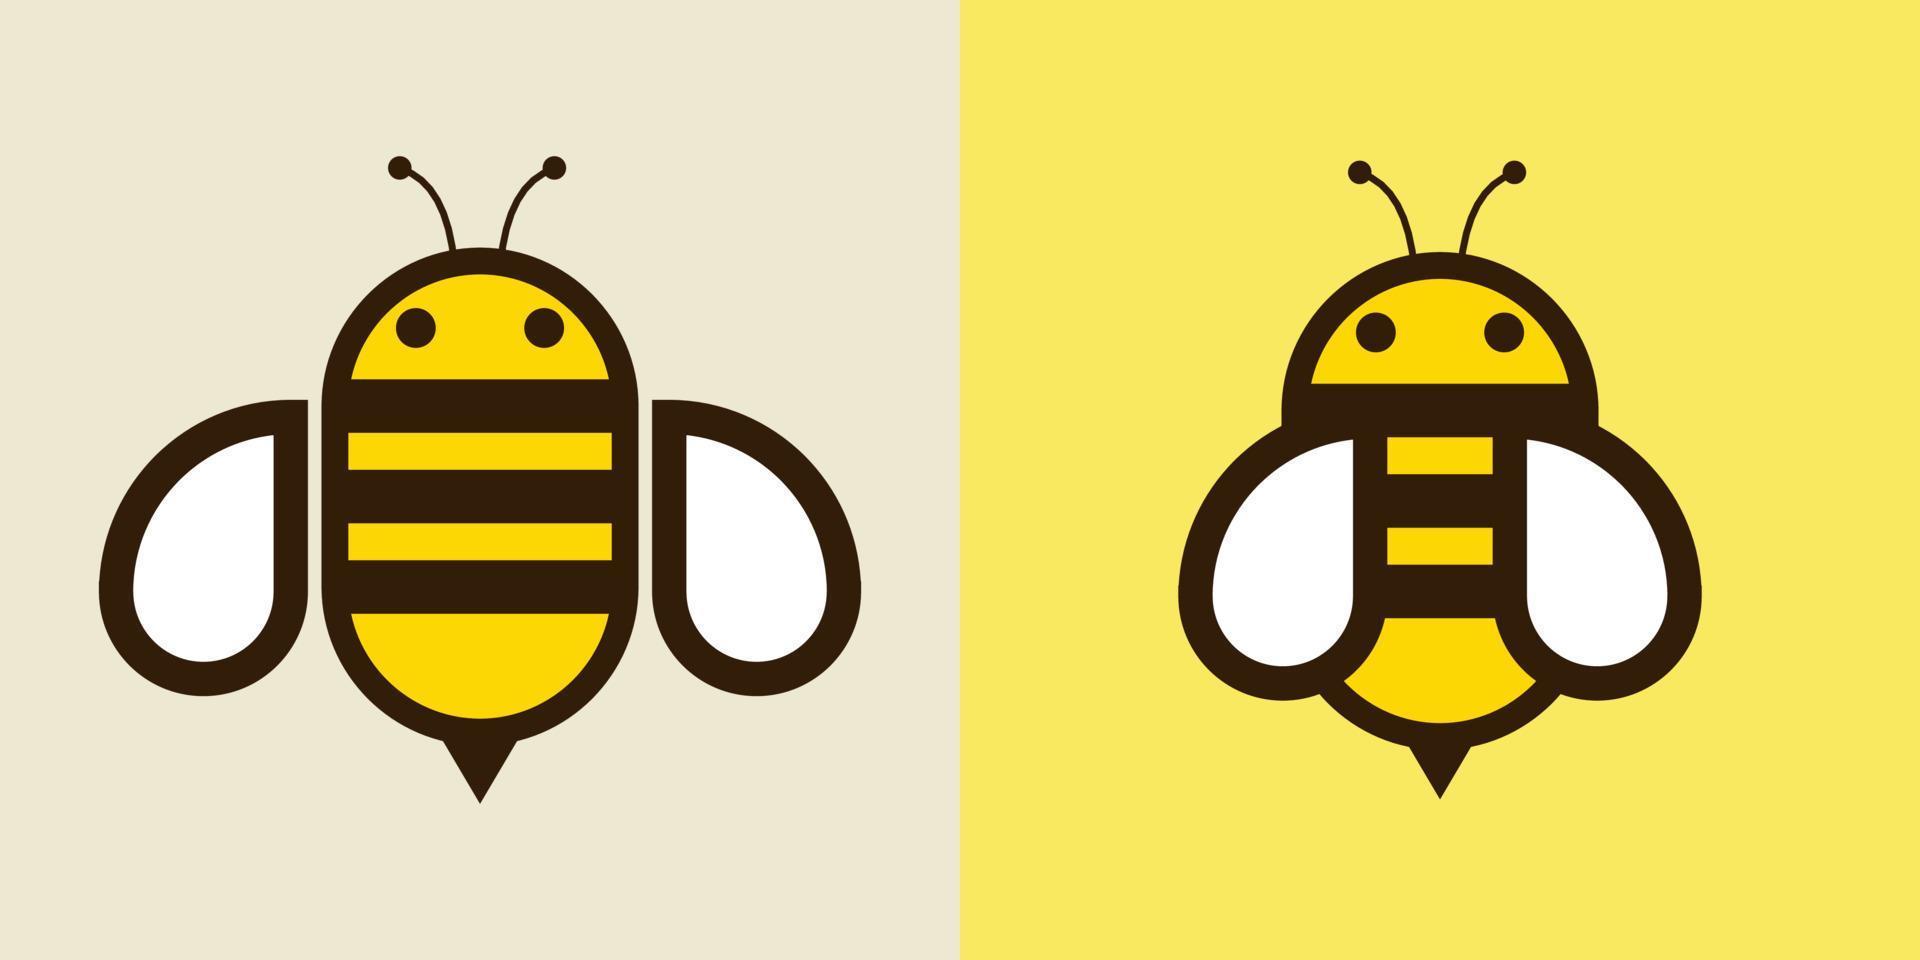 icono de abeja de miel. abeja voladora de miel. insect.bugs, insectos y arácnidos ilustración vectorial de estilo plano. vector